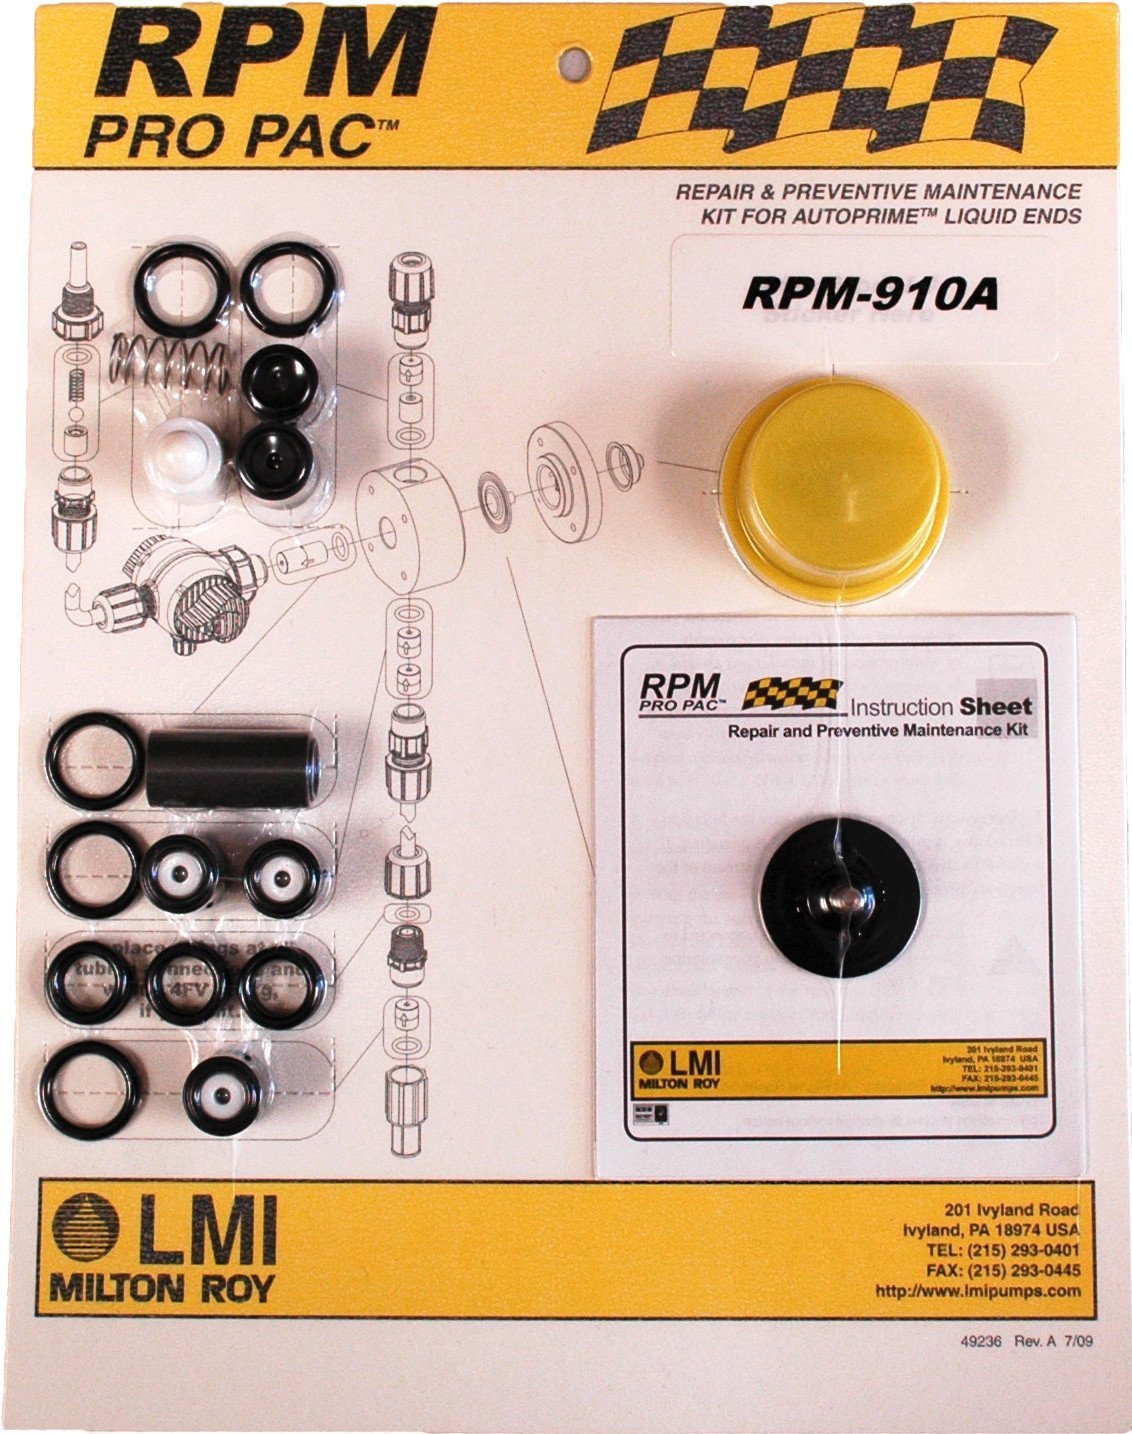 LMI Pro Pac Roytronic Liquid End RPM Kits Chemical Metering Pumps - Cleanflow